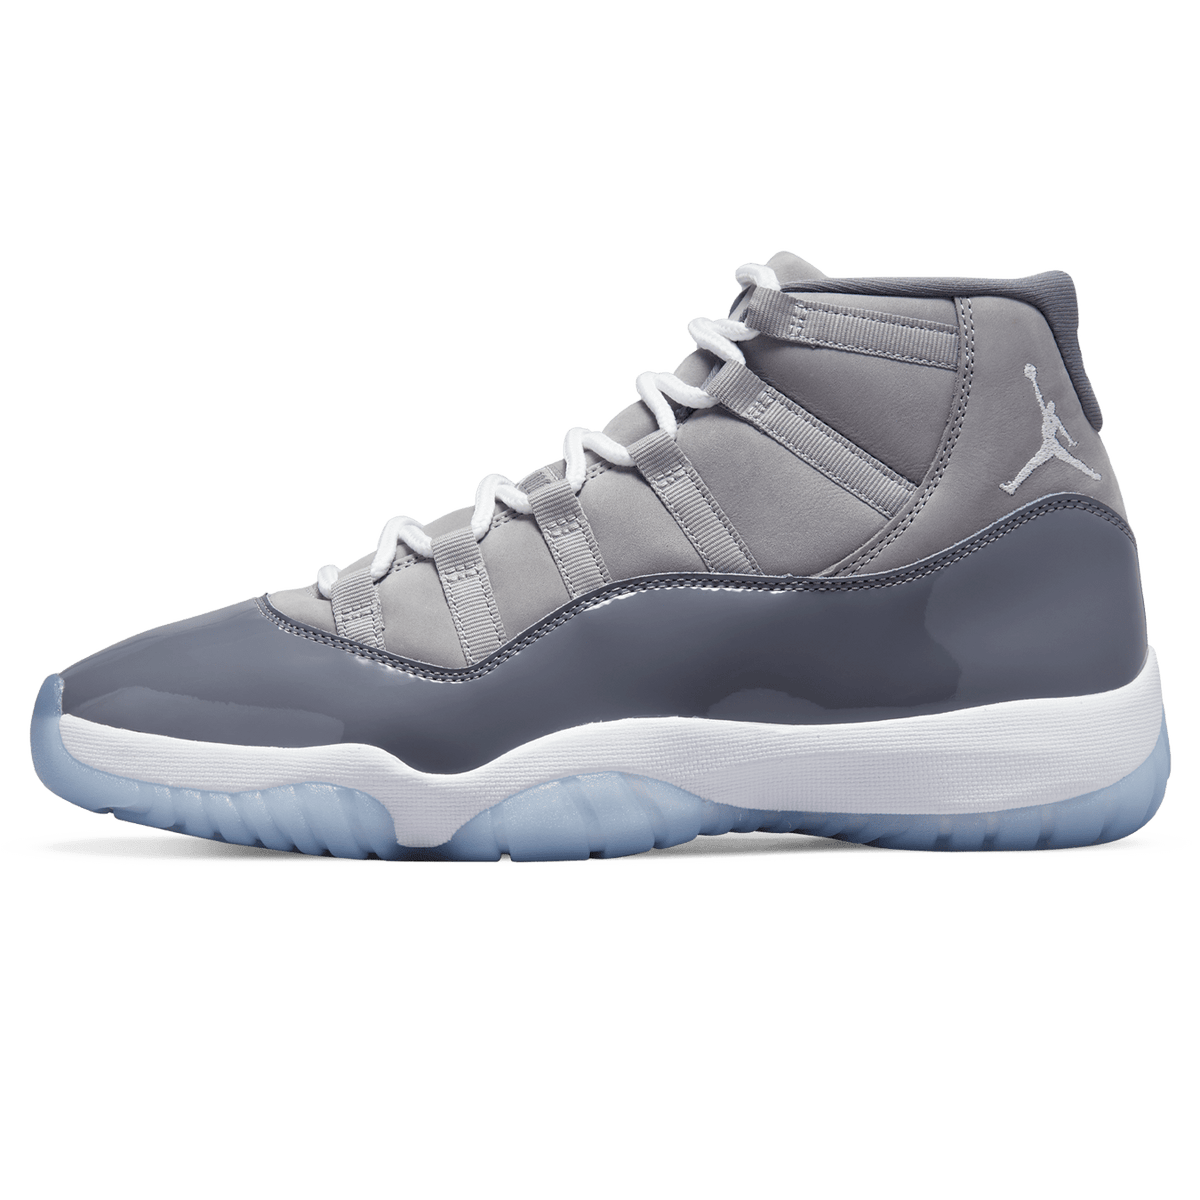 Air Jordan 11 Retro 'Cool Grey' 2021 - Kick Game